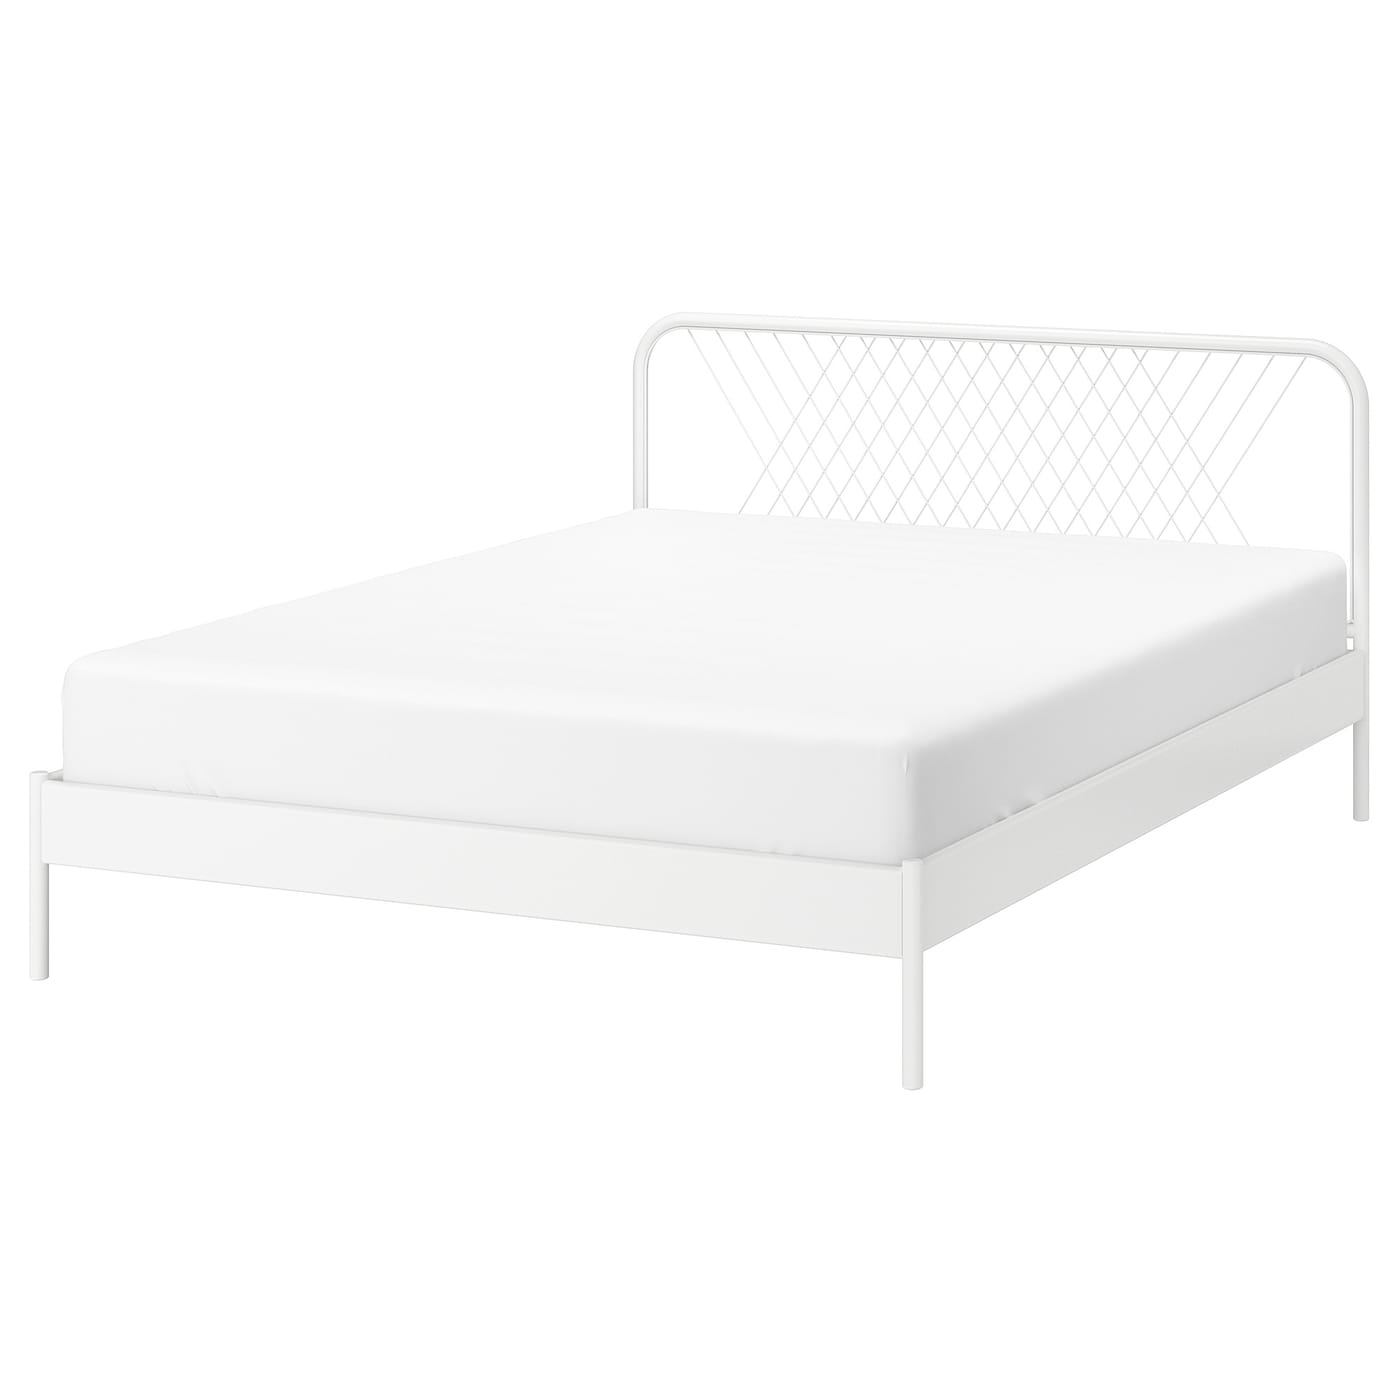 Каркас кровати - IKEA NESTTUN/LÖNSET/LONSET, 200х140 см, белый, НЕСТТУН/ЛОНСЕТ ИКЕА